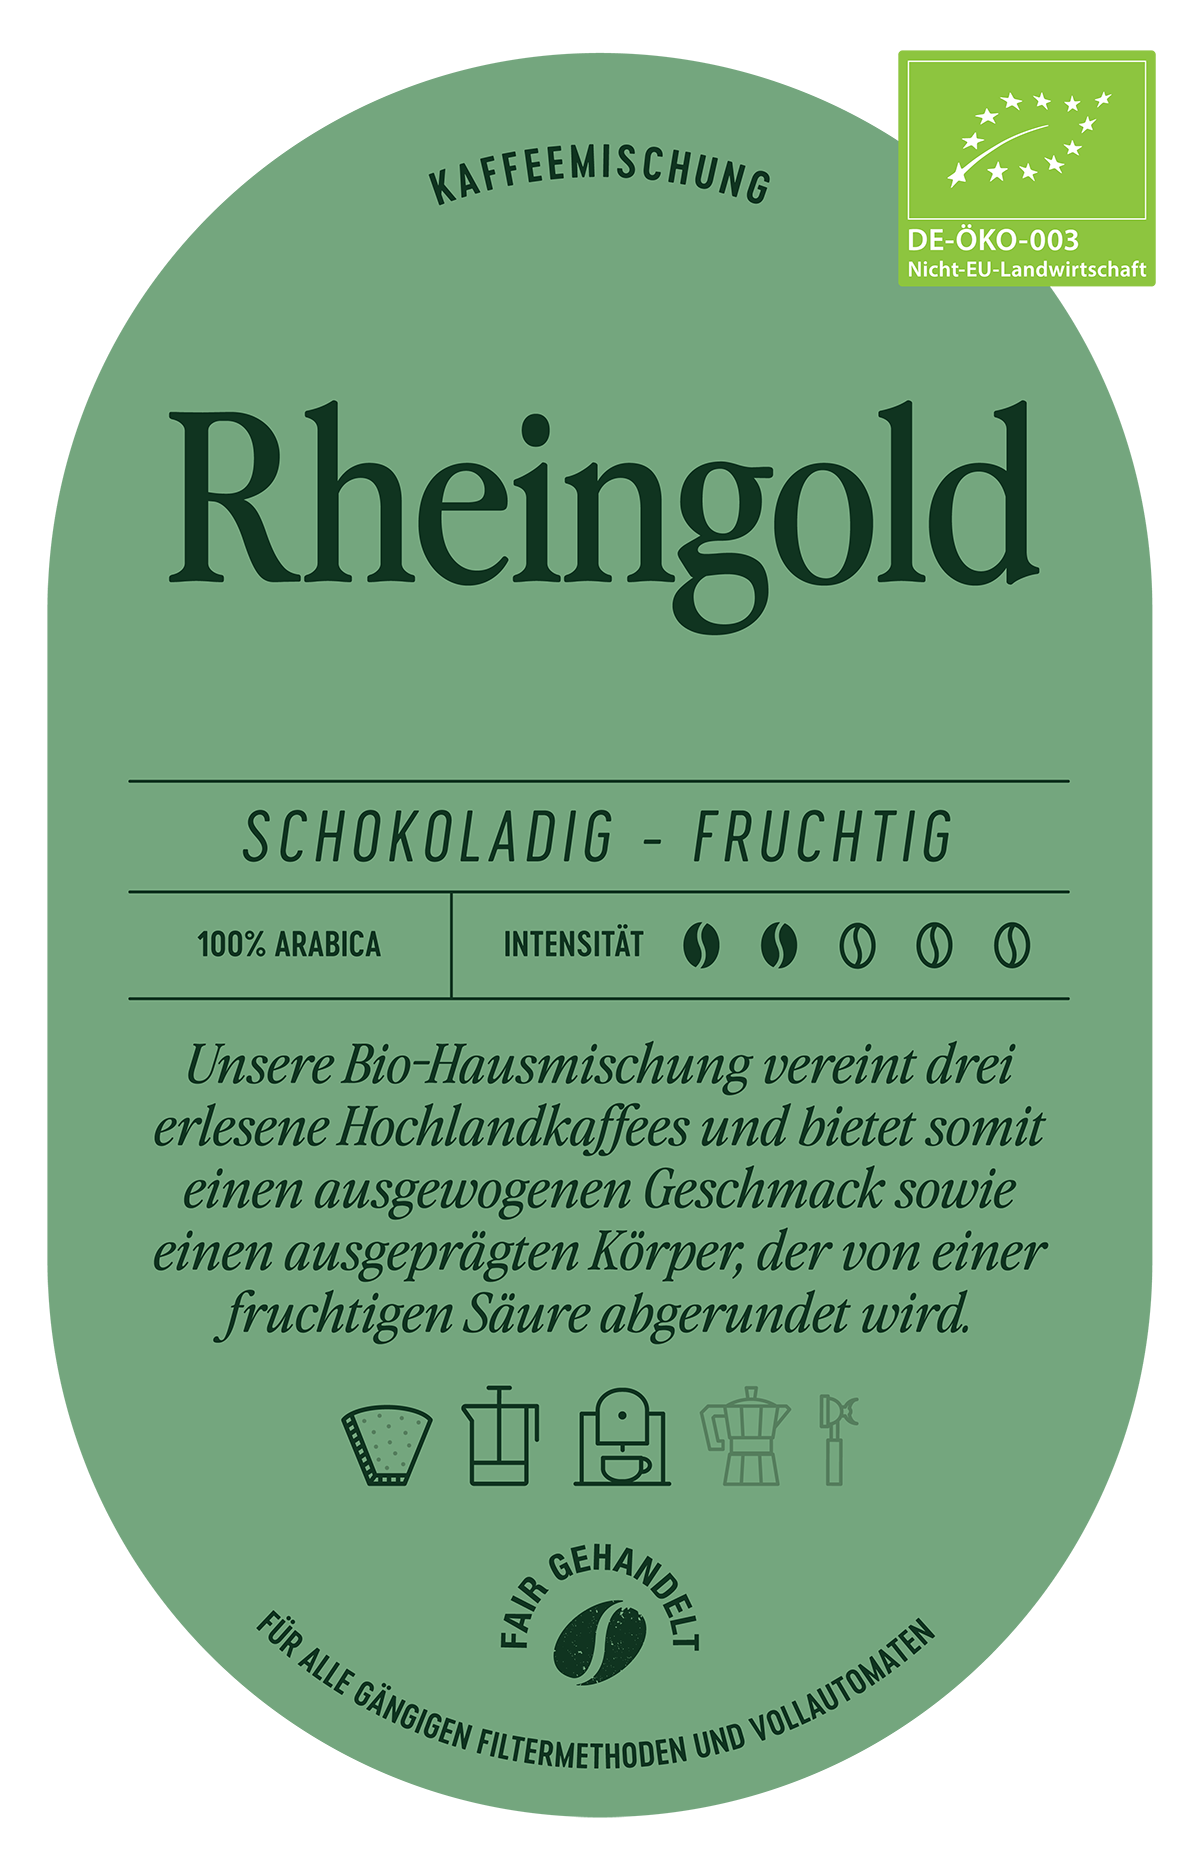 Rheingold Kaffee Label